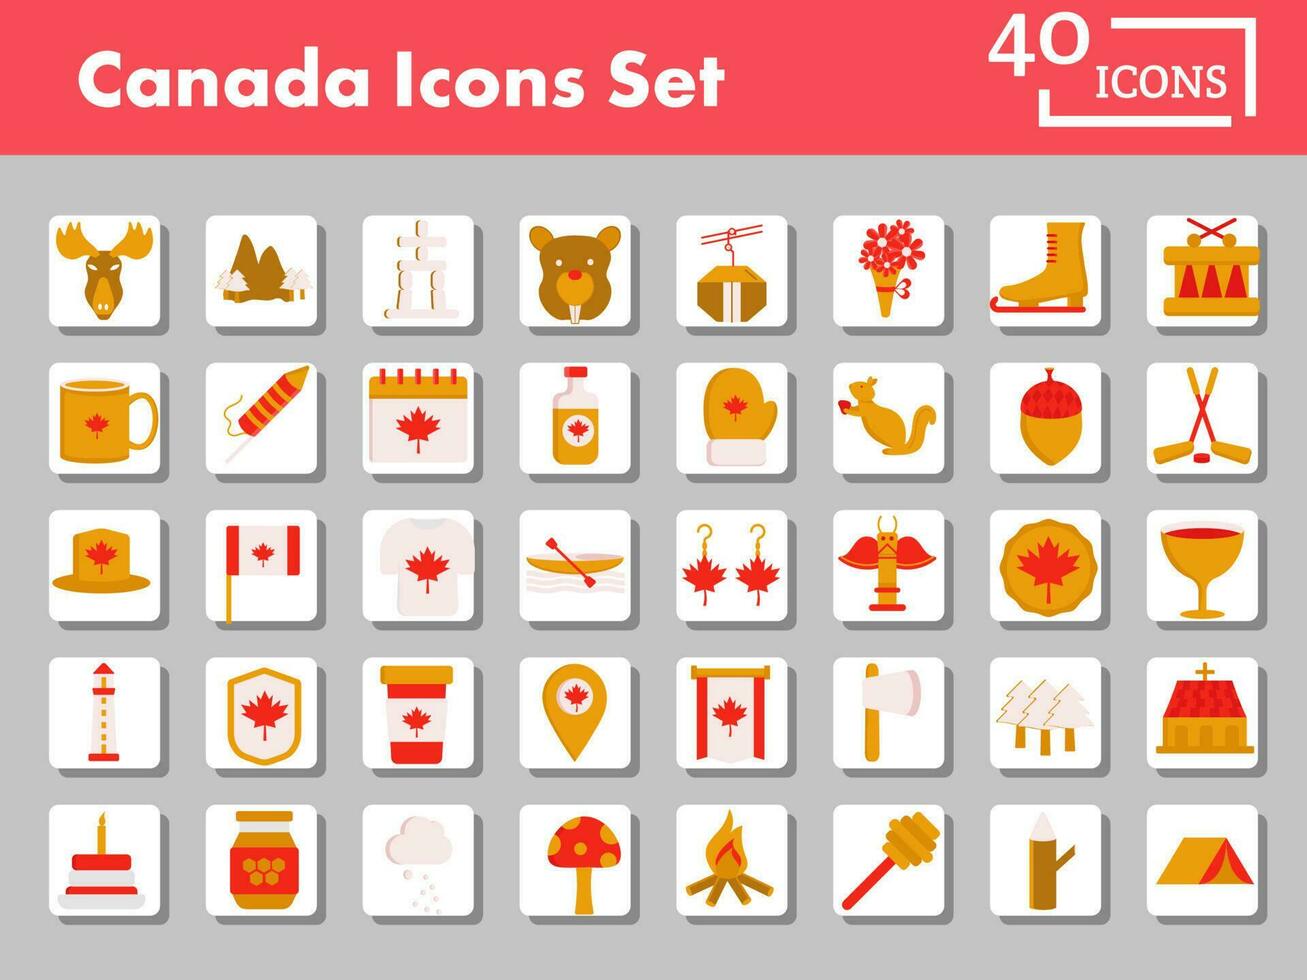 färgrik uppsättning av kanada platt ikon eller symbol på fyrkant bakgrund. vektor